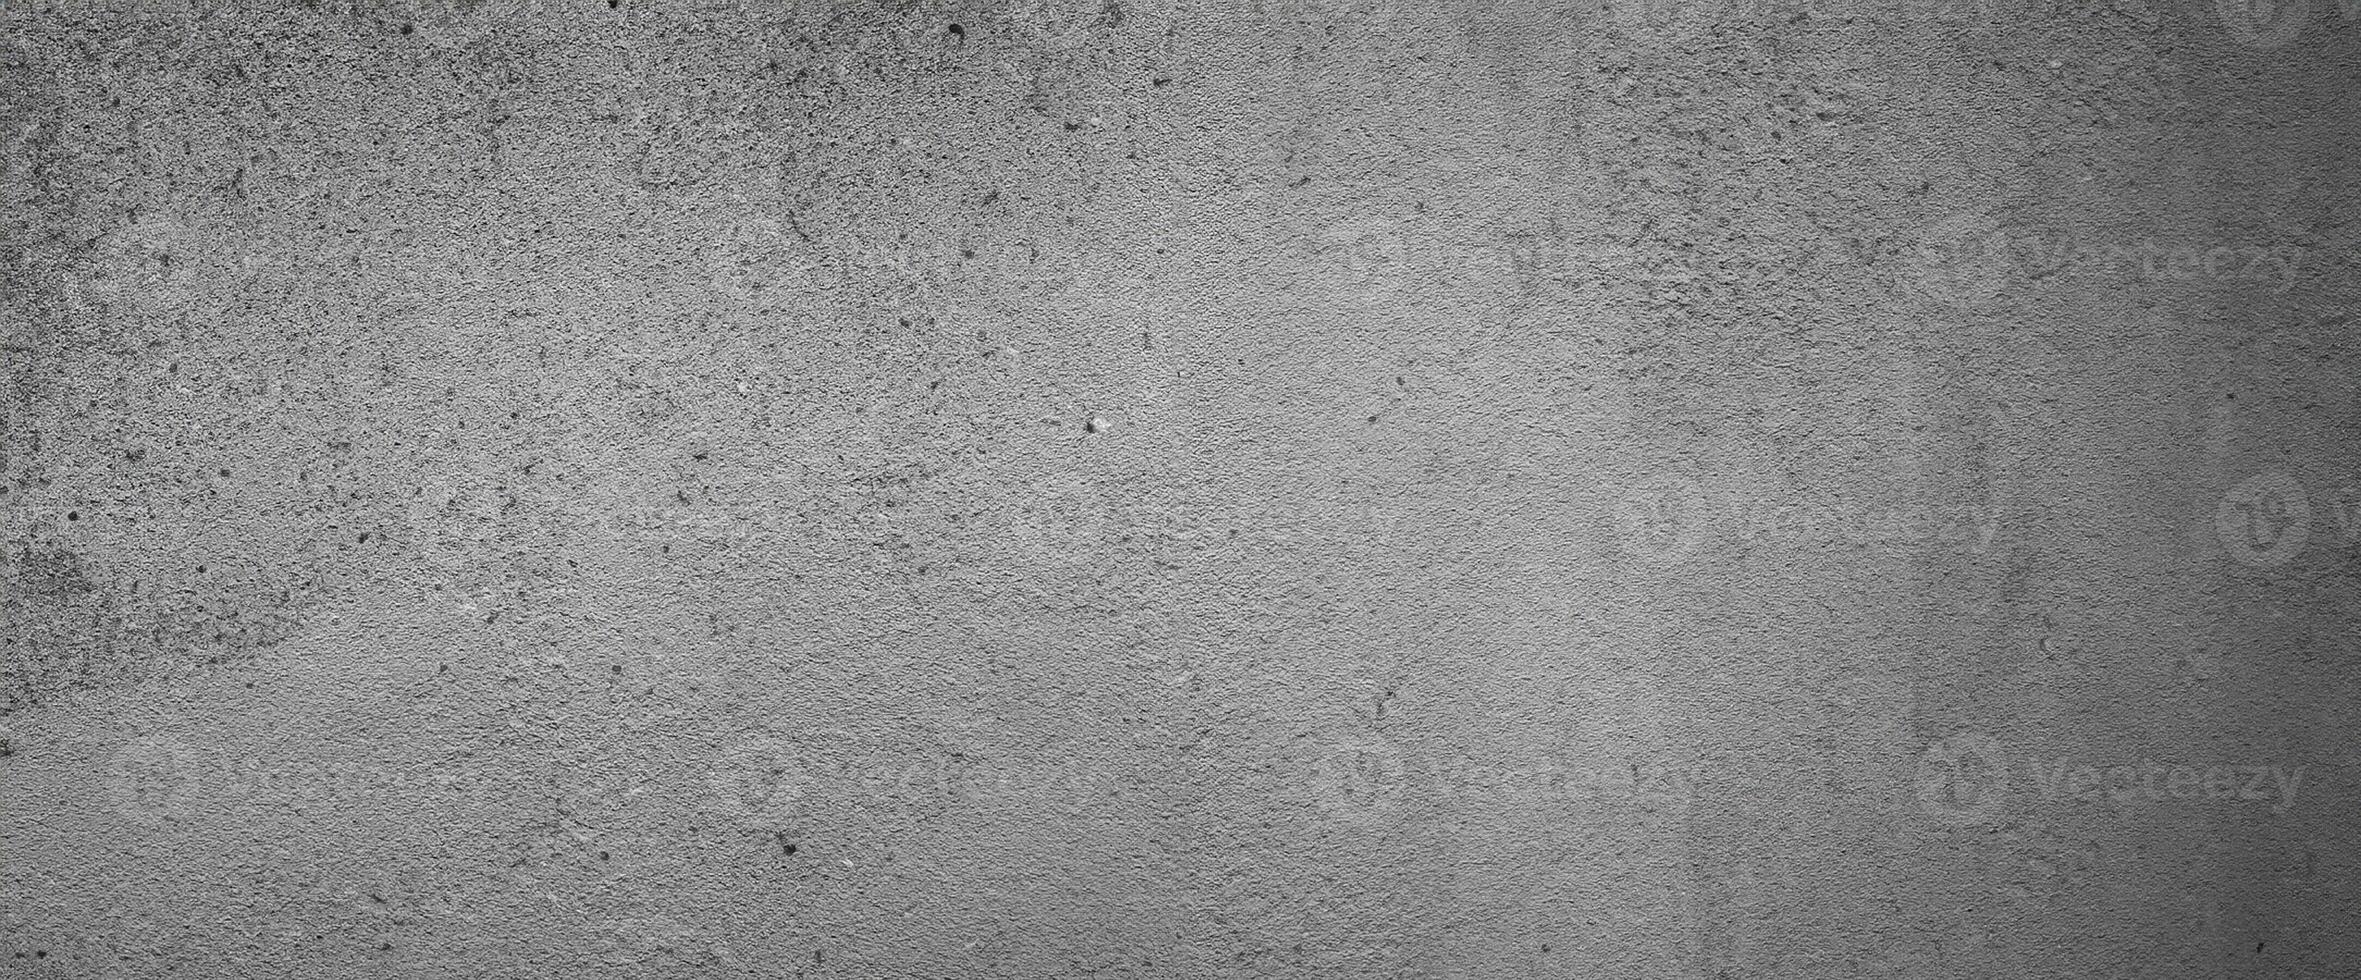 grungy grå bakgrund av naturlig paintbrush stroke texturerad cement eller sten gammal. betong textur som en retro mönster vägg konceptuella. foto